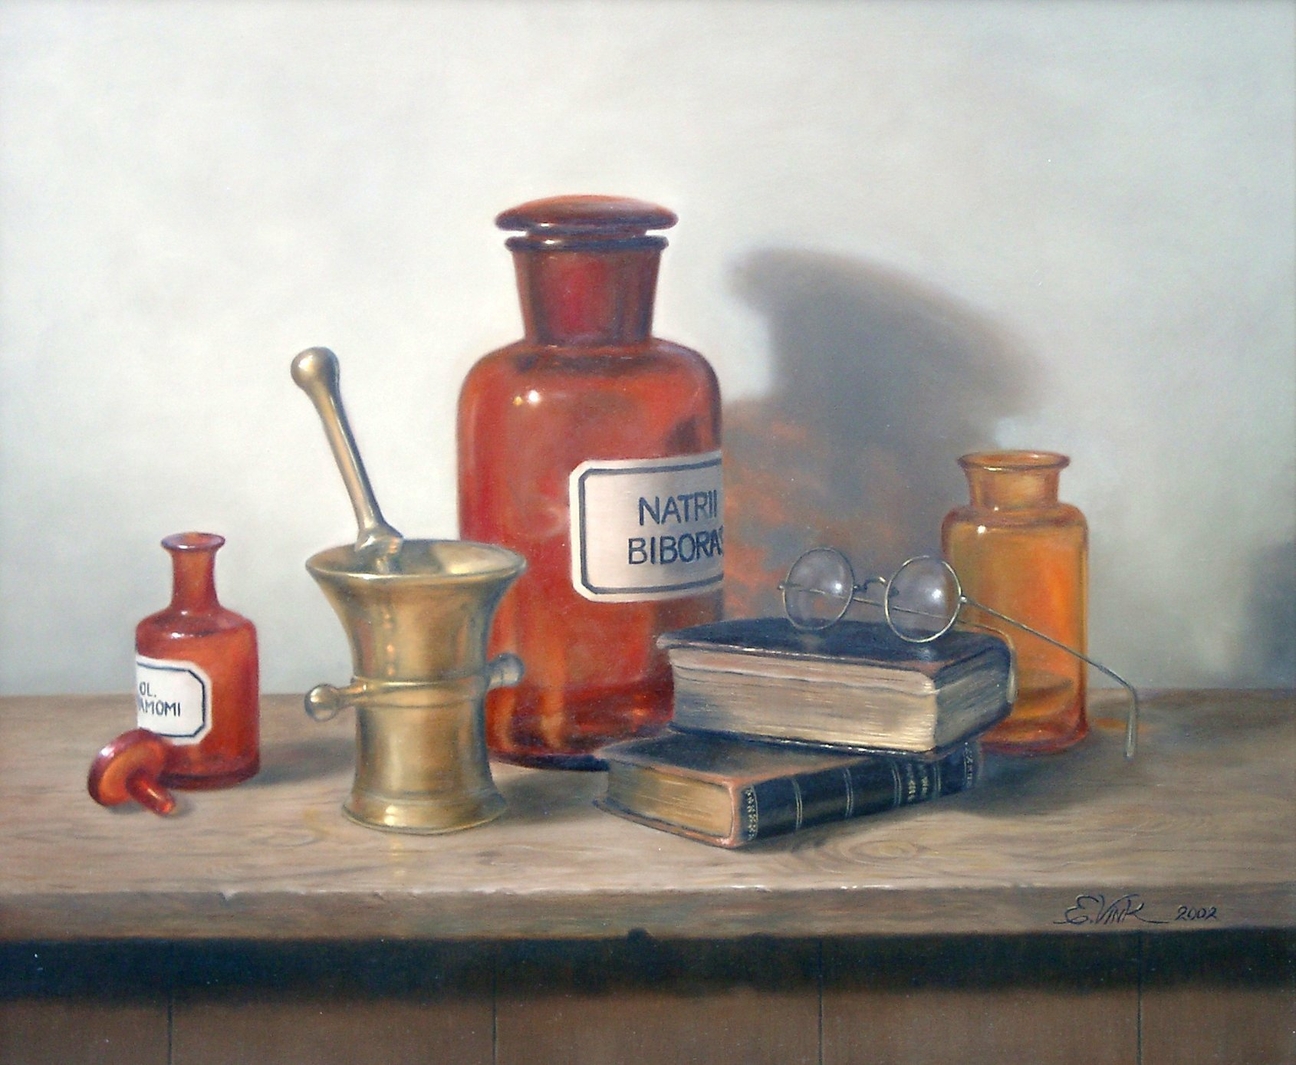 Stilleven met antieke spullen uit een apotheek zoals een koperen vijzel en oranje glazen potten voor medicijnen. Geschilderd door Els Vink.